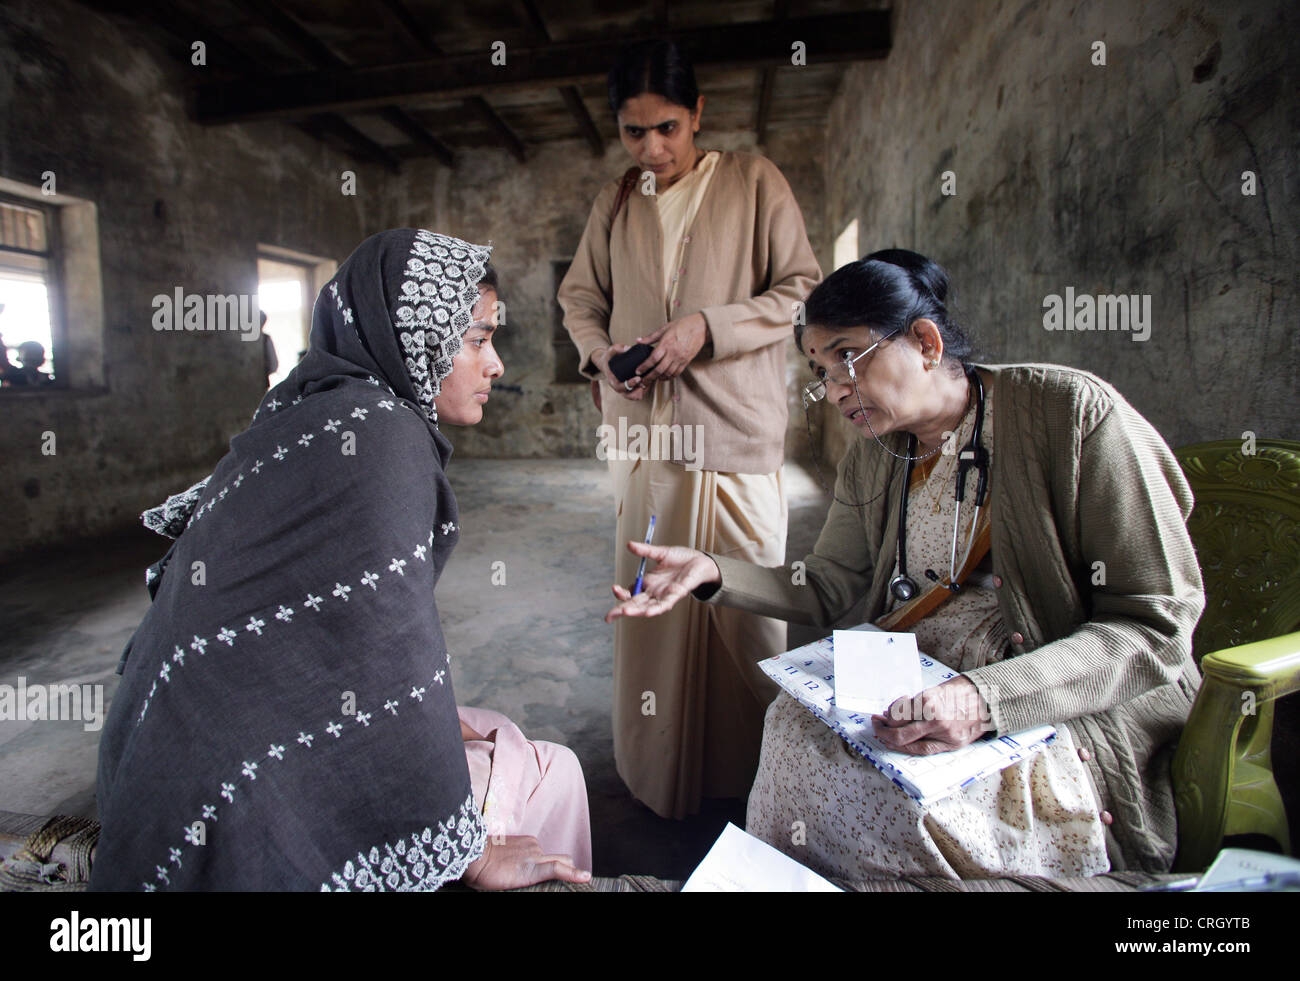 Medico Volontario (destra) esamina malati abitanti di un villaggio in India senza alcun costo/royalty Foto Stock